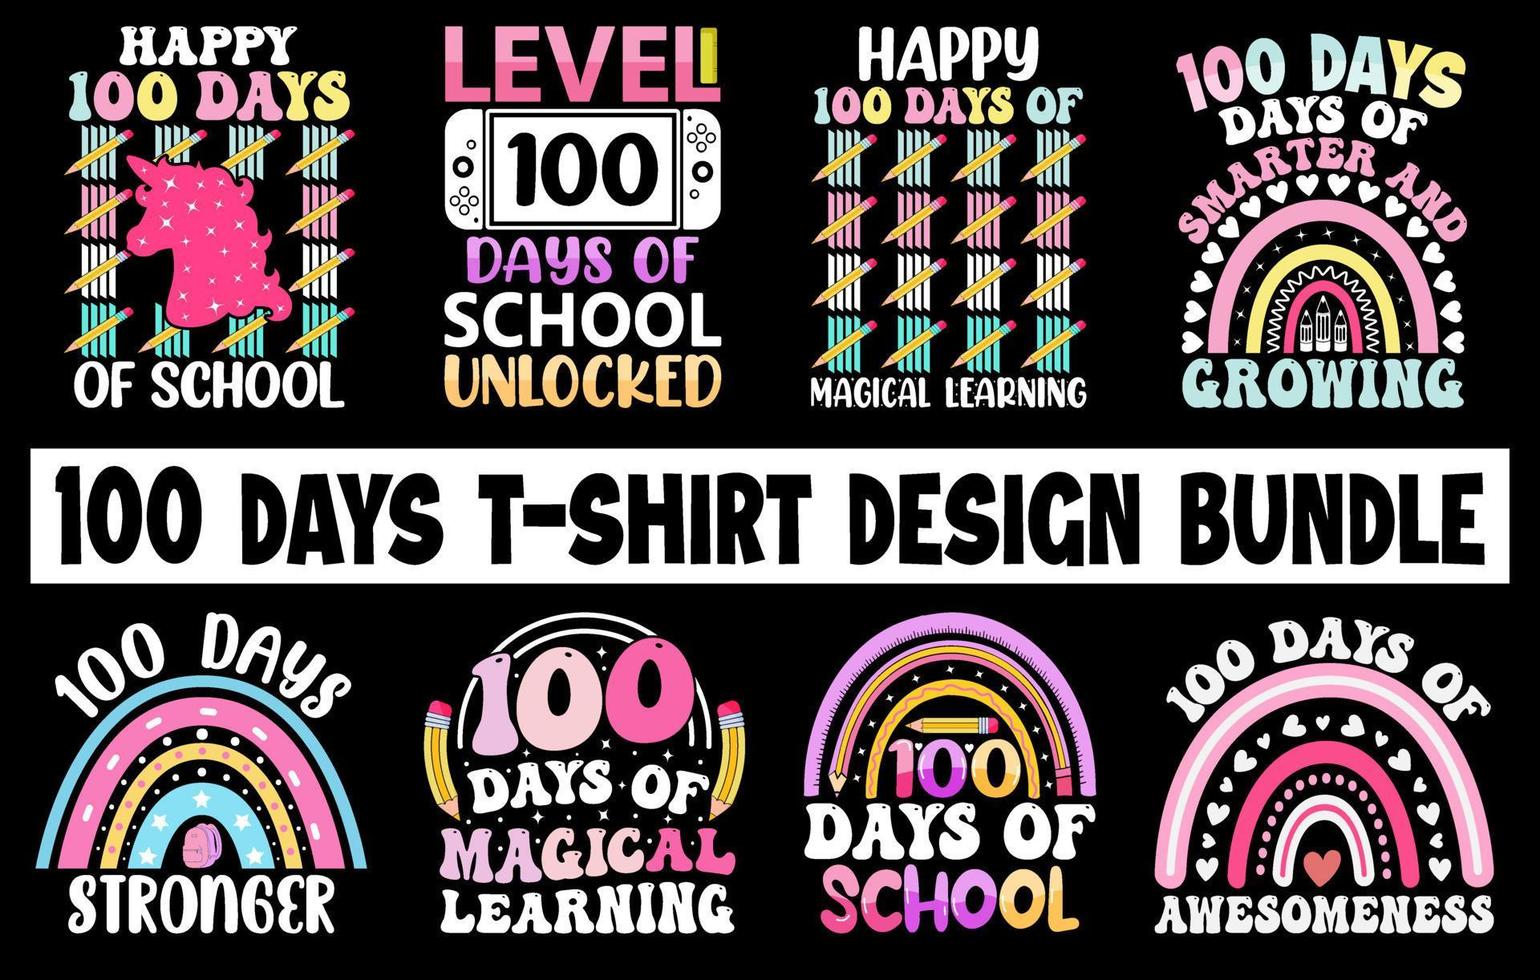 100:e dagar av skola t-shirt bunt, hundra dagar t-shirt design uppsättning, färg t-shirt samling, barn t-shirt design uppsättning vektor